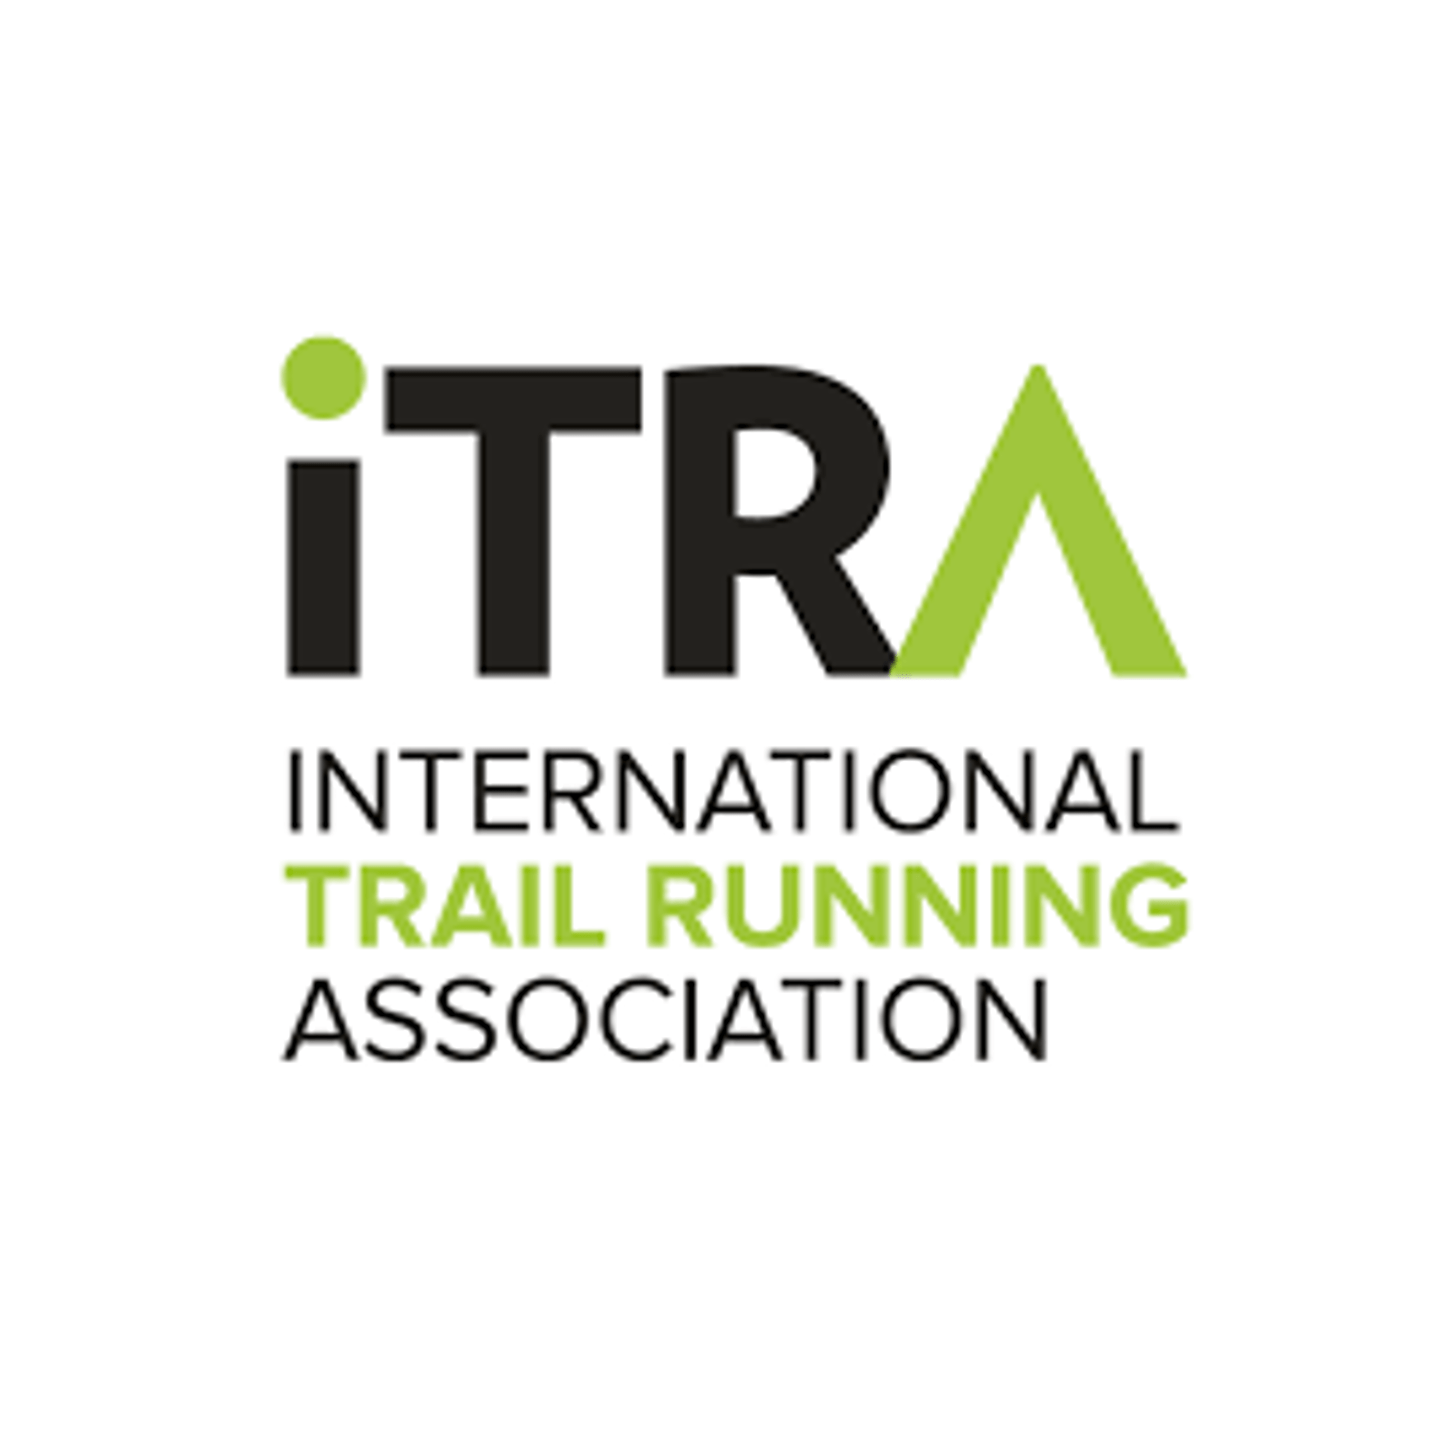 Logo-ITRA